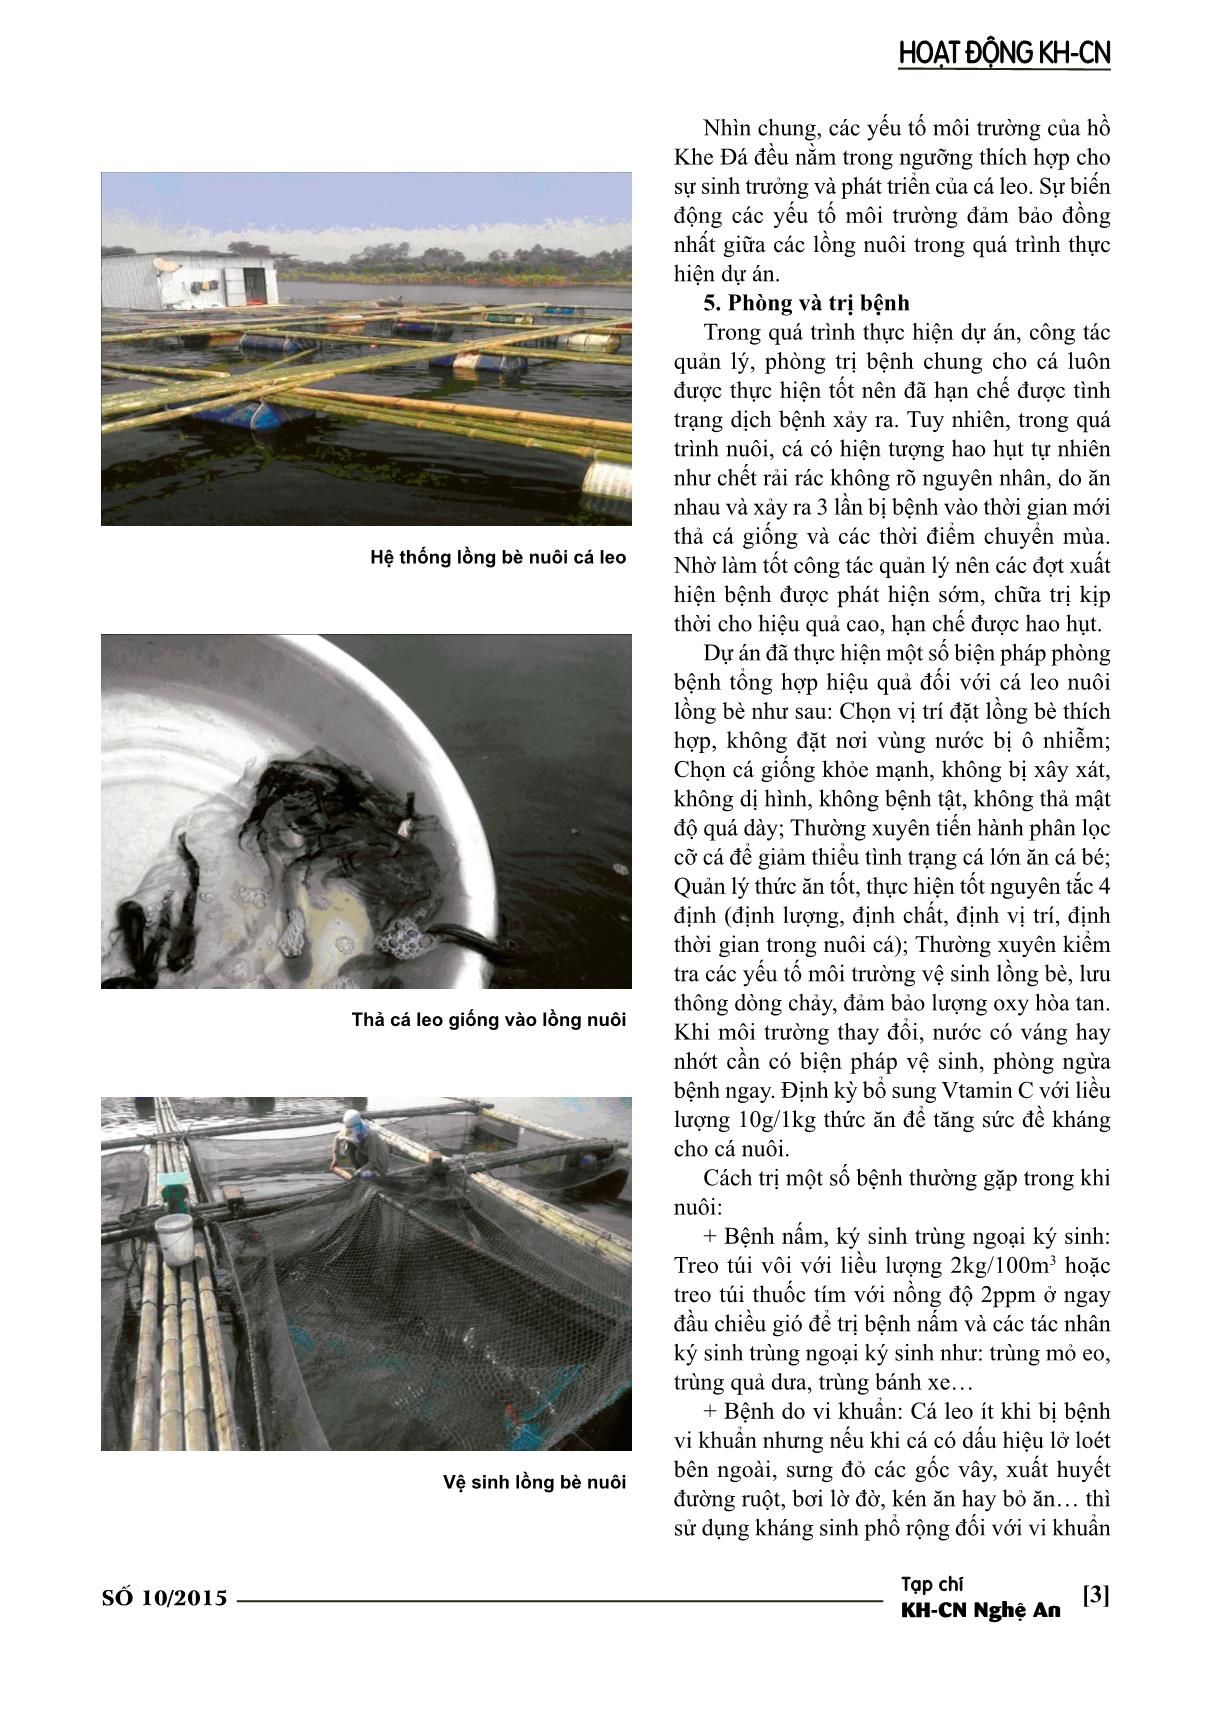 Mô hình nuôi thương phẩm cá leo trong lồng bè trên thủy vực lớn tại nghệ An trang 3